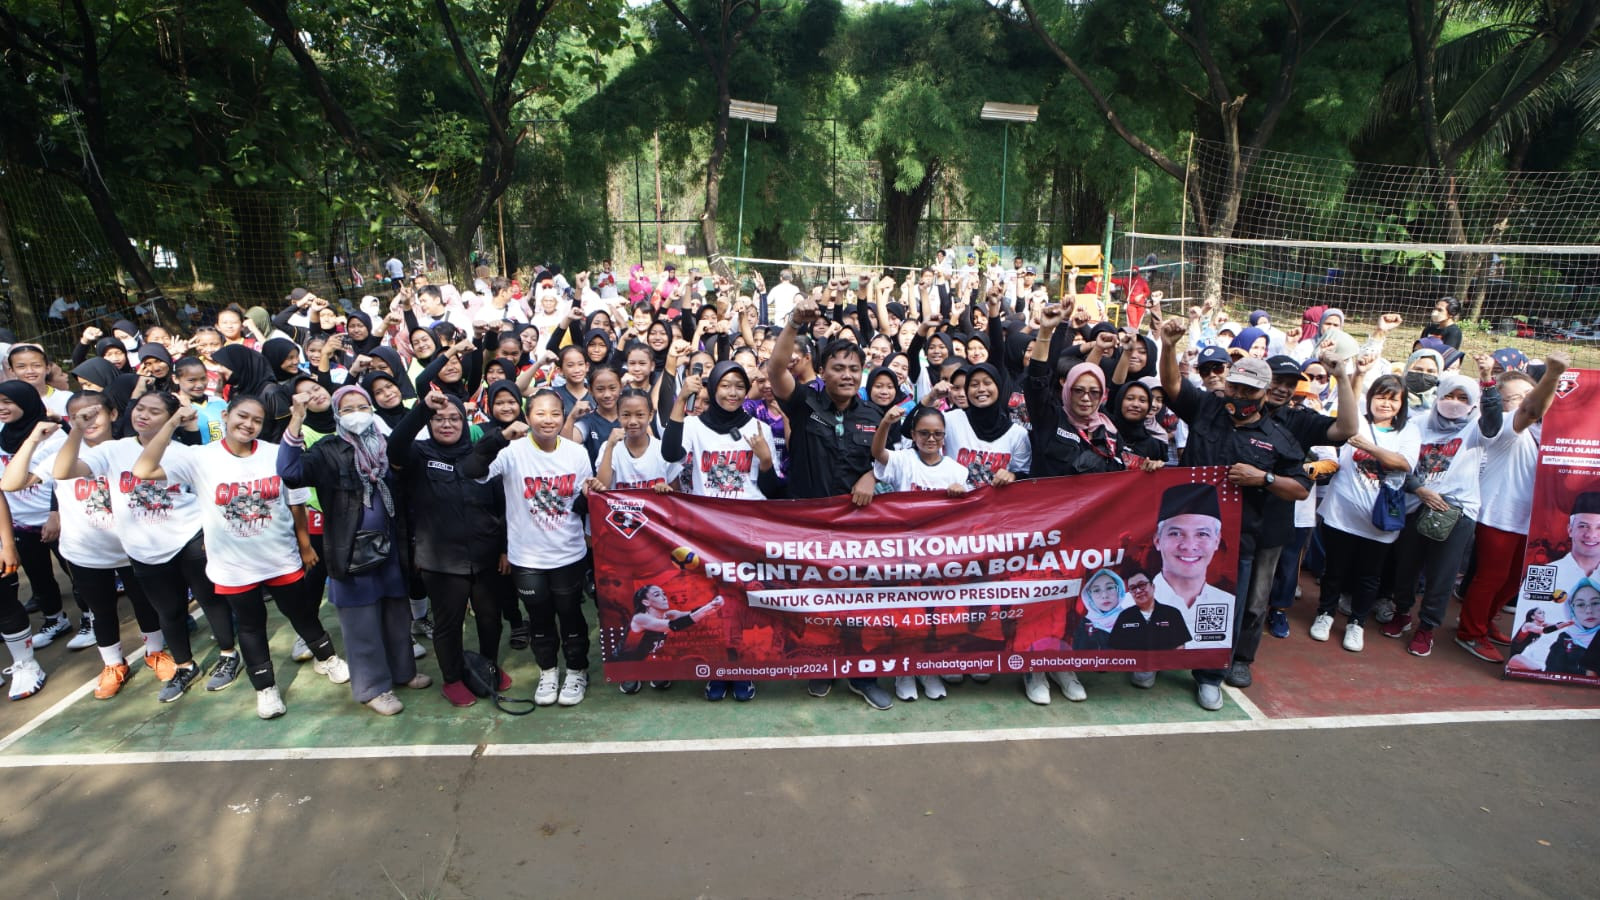 Saga Jaring Dukungan untuk Ganjar Pranowo di Bekasi lewat Turnamen Voli - JPNN.com